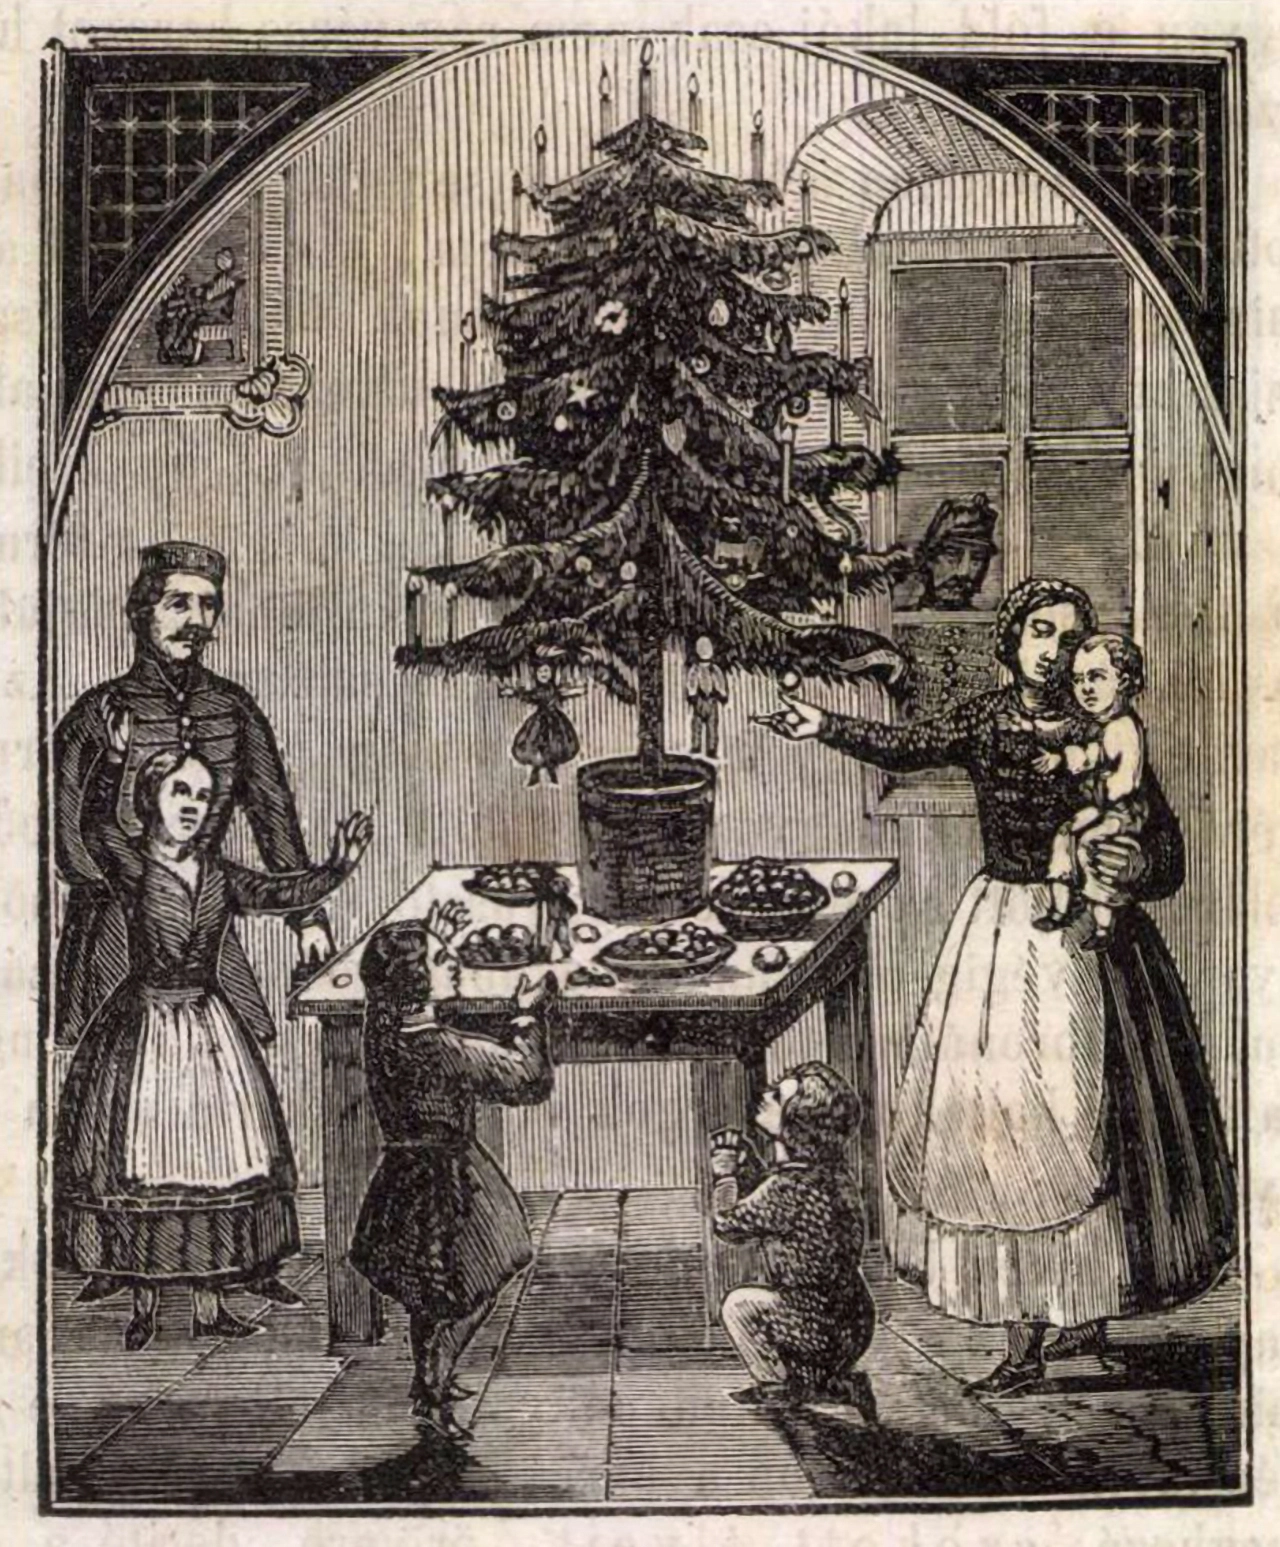 Az első karácsonyfa Budapesten — hogyan lett státusz- helyett a nagylelkűség szimbóluma?